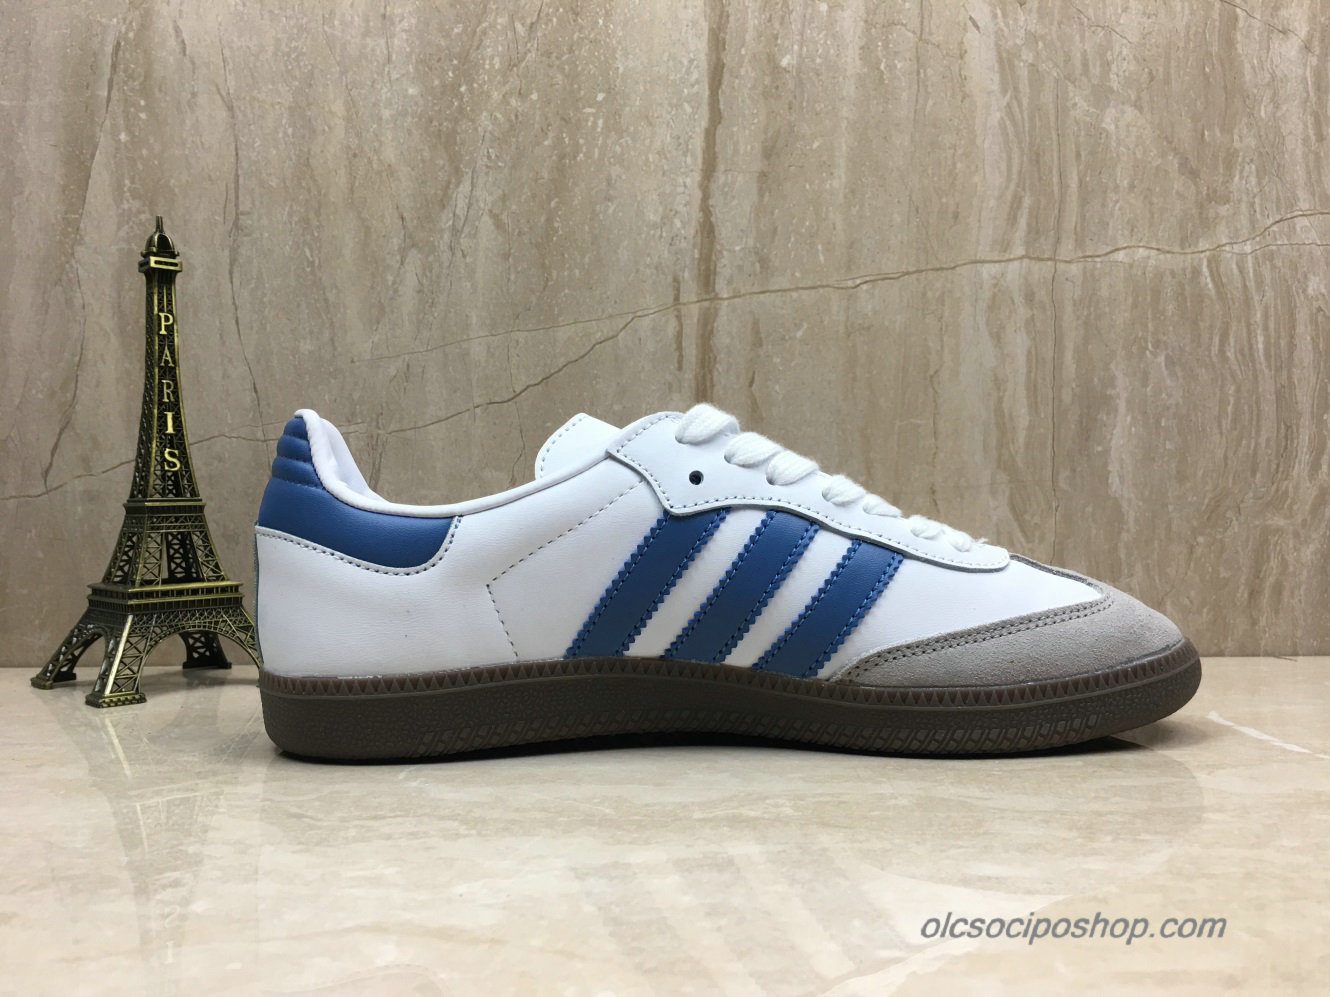 Adidas Samba OG Fehér/Kék/Szürke Cipők (B44629)